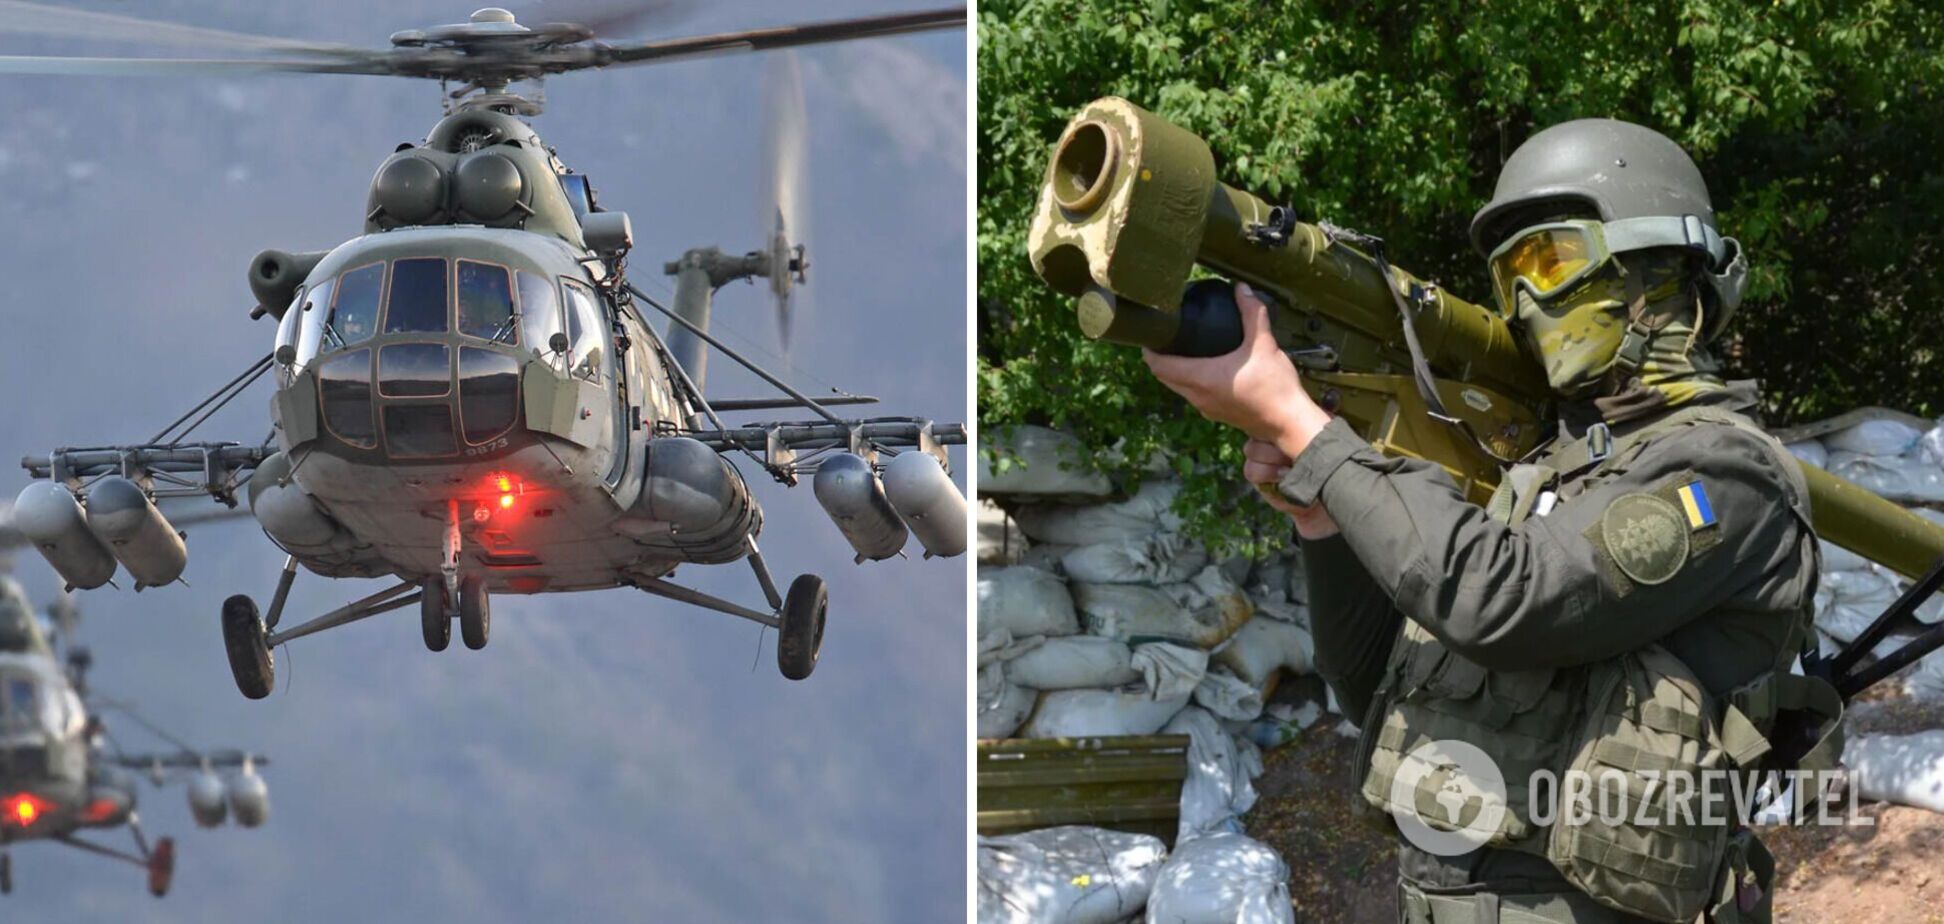 Українські захисники на Донбасі 'приземлили' черговий гелікоптер окупантів. Відео